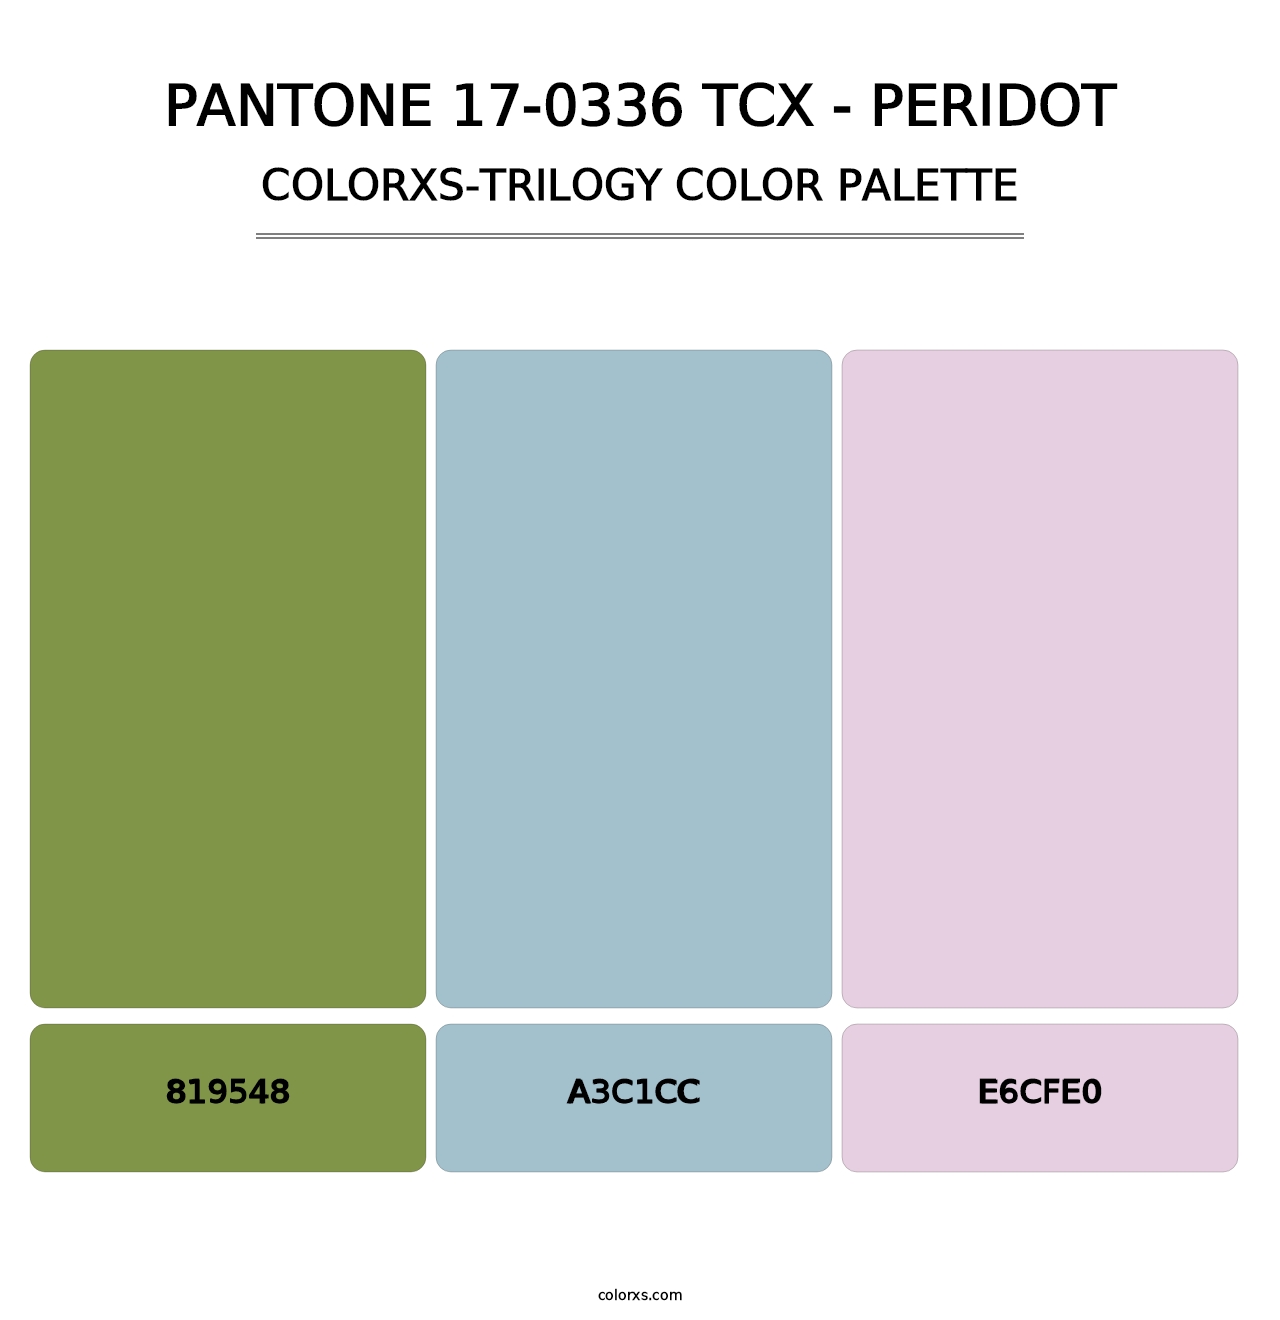 PANTONE 17-0336 TCX - Peridot - Colorxs Trilogy Palette